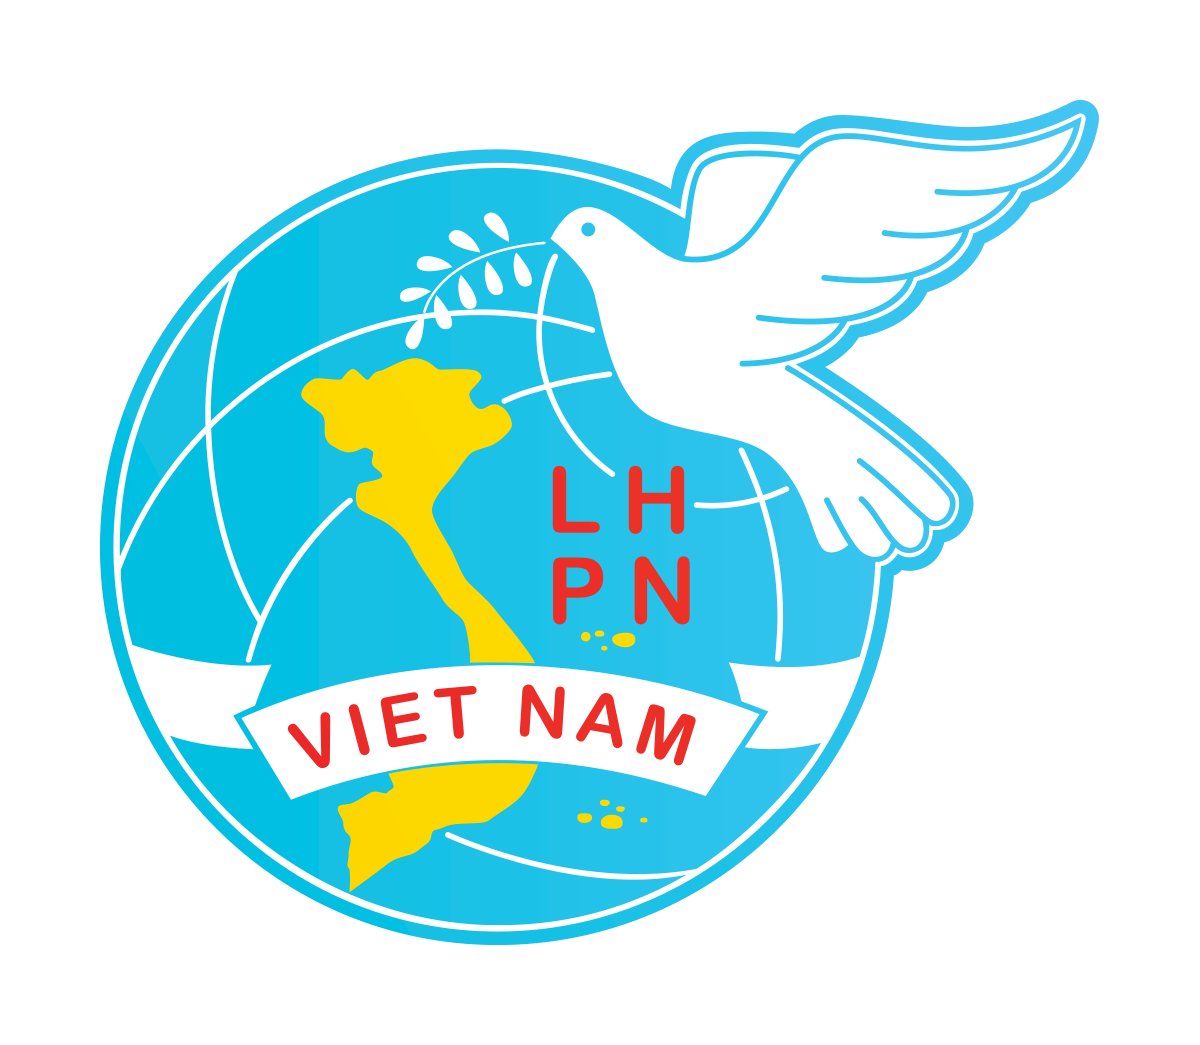 Logo hội phụ nữ Việt Nam PNG có ý nghĩa gì?
